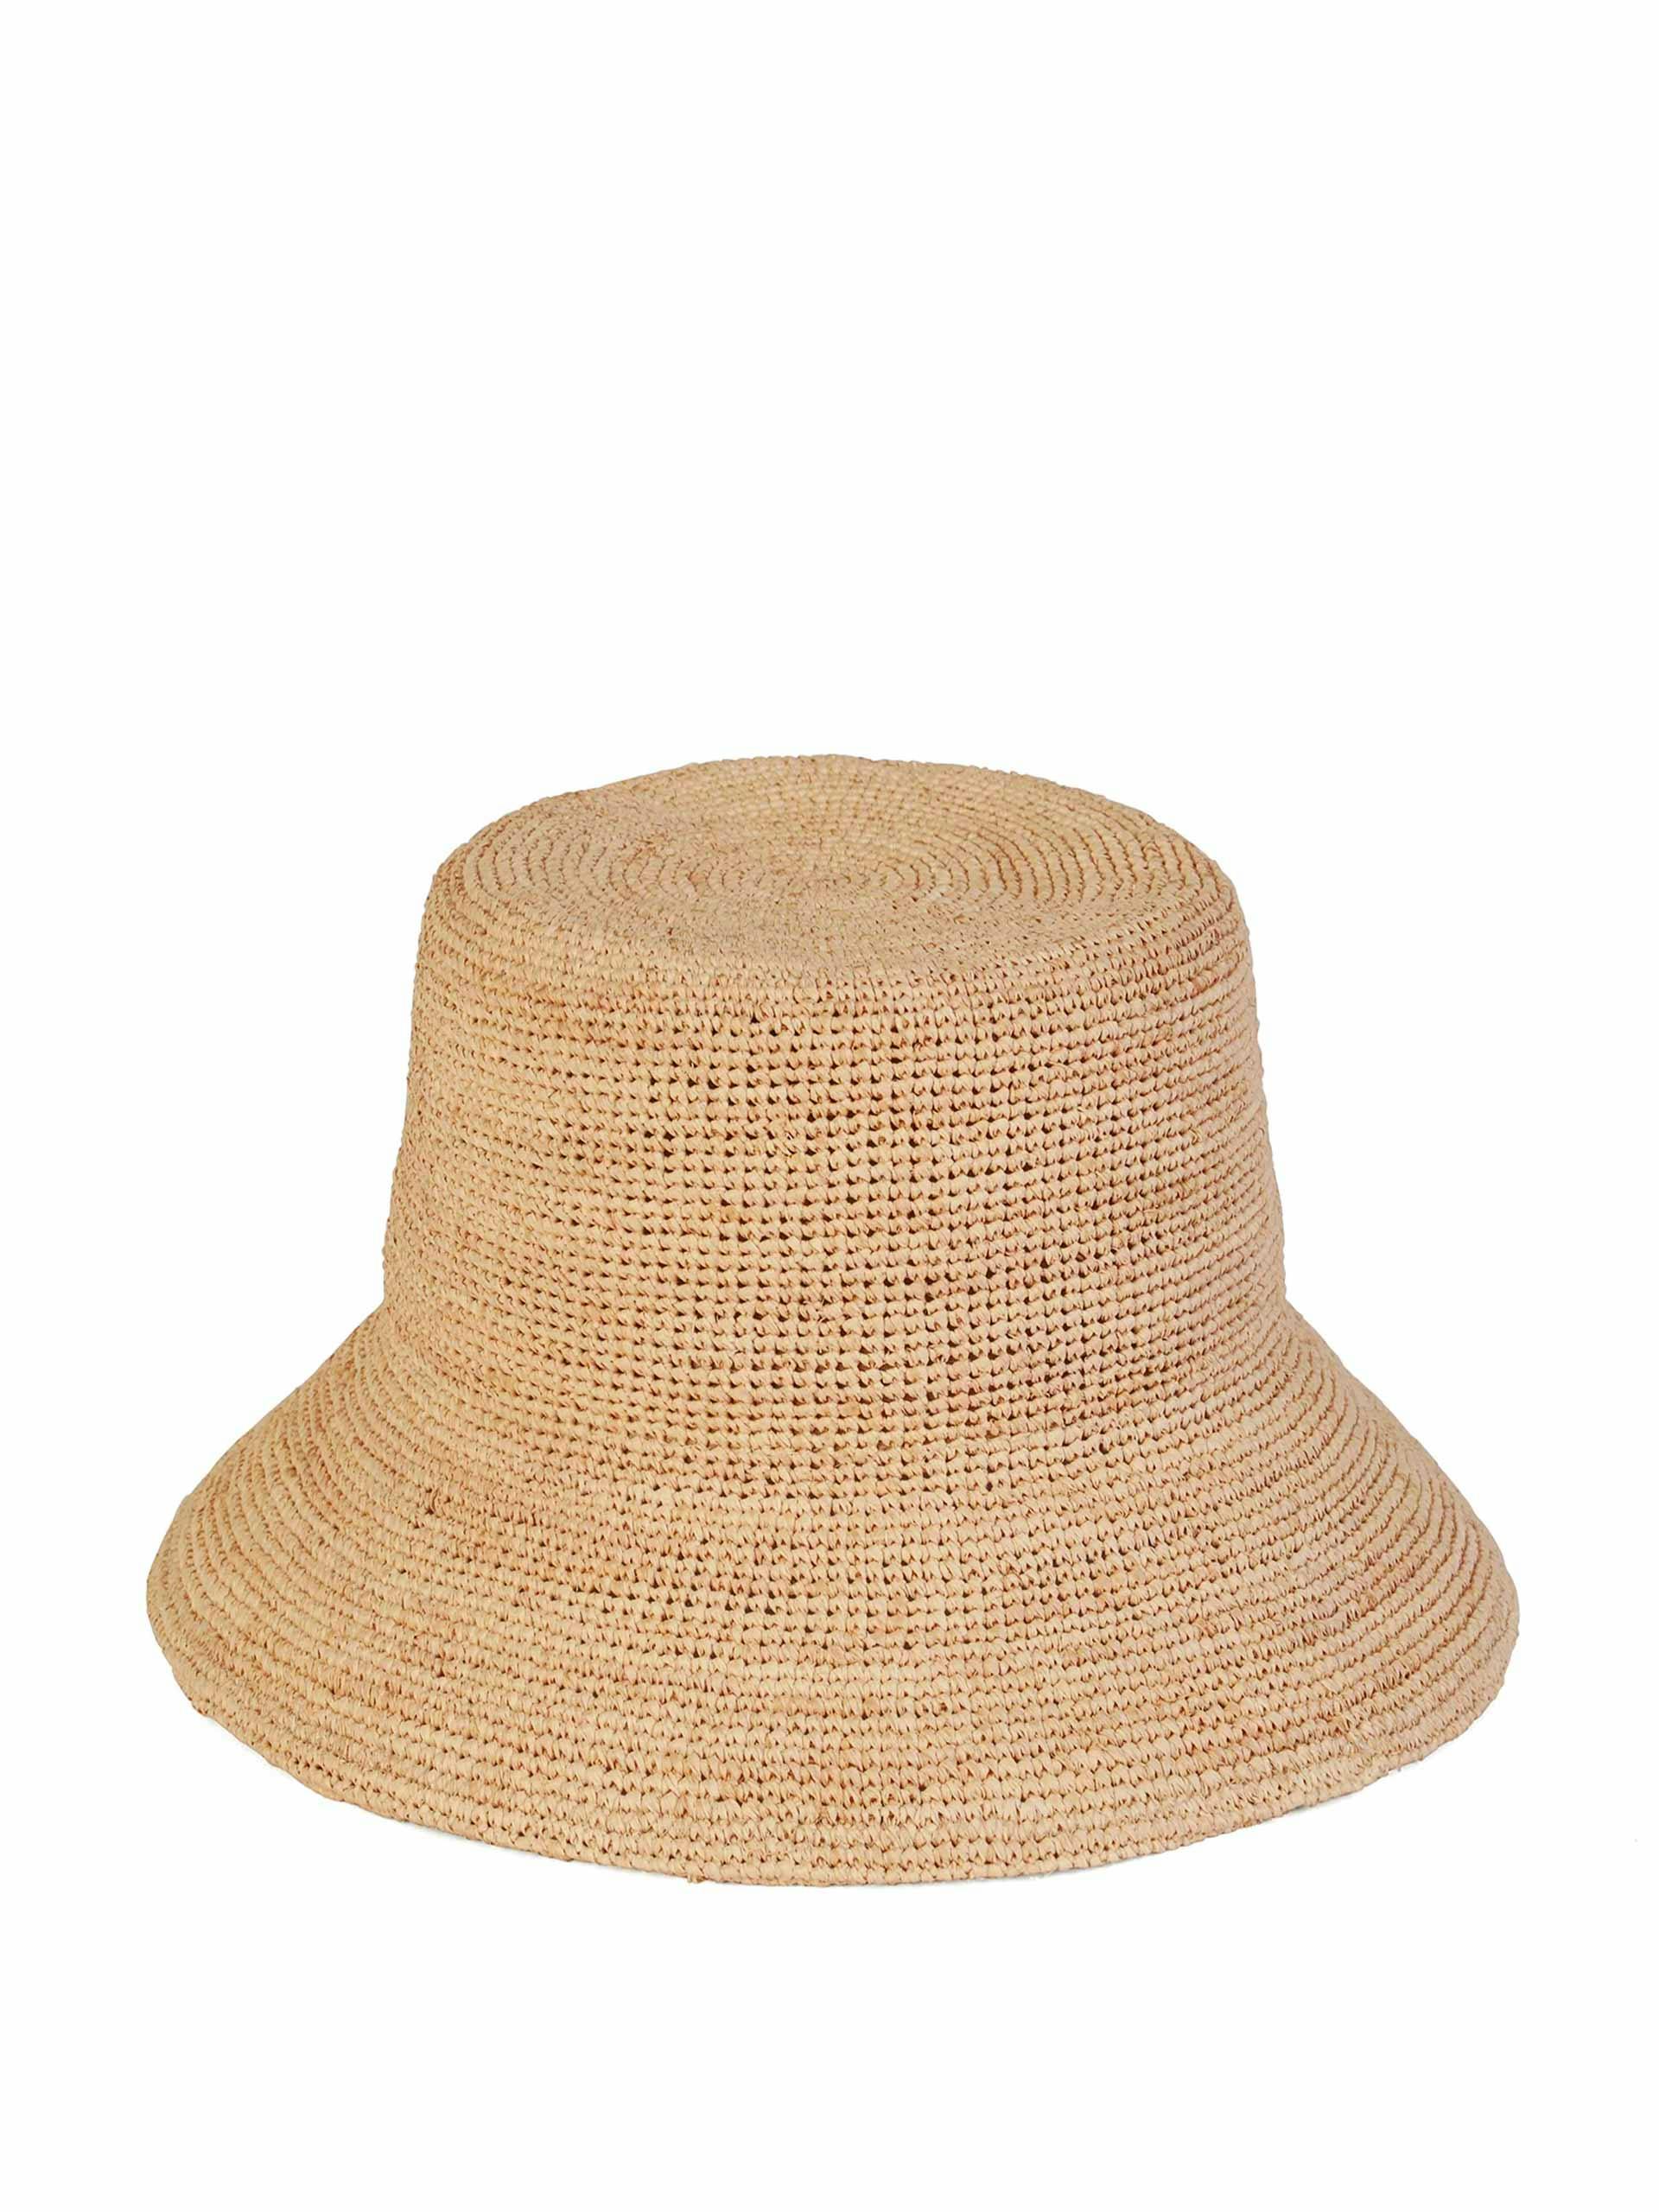 The Inca bucket hat